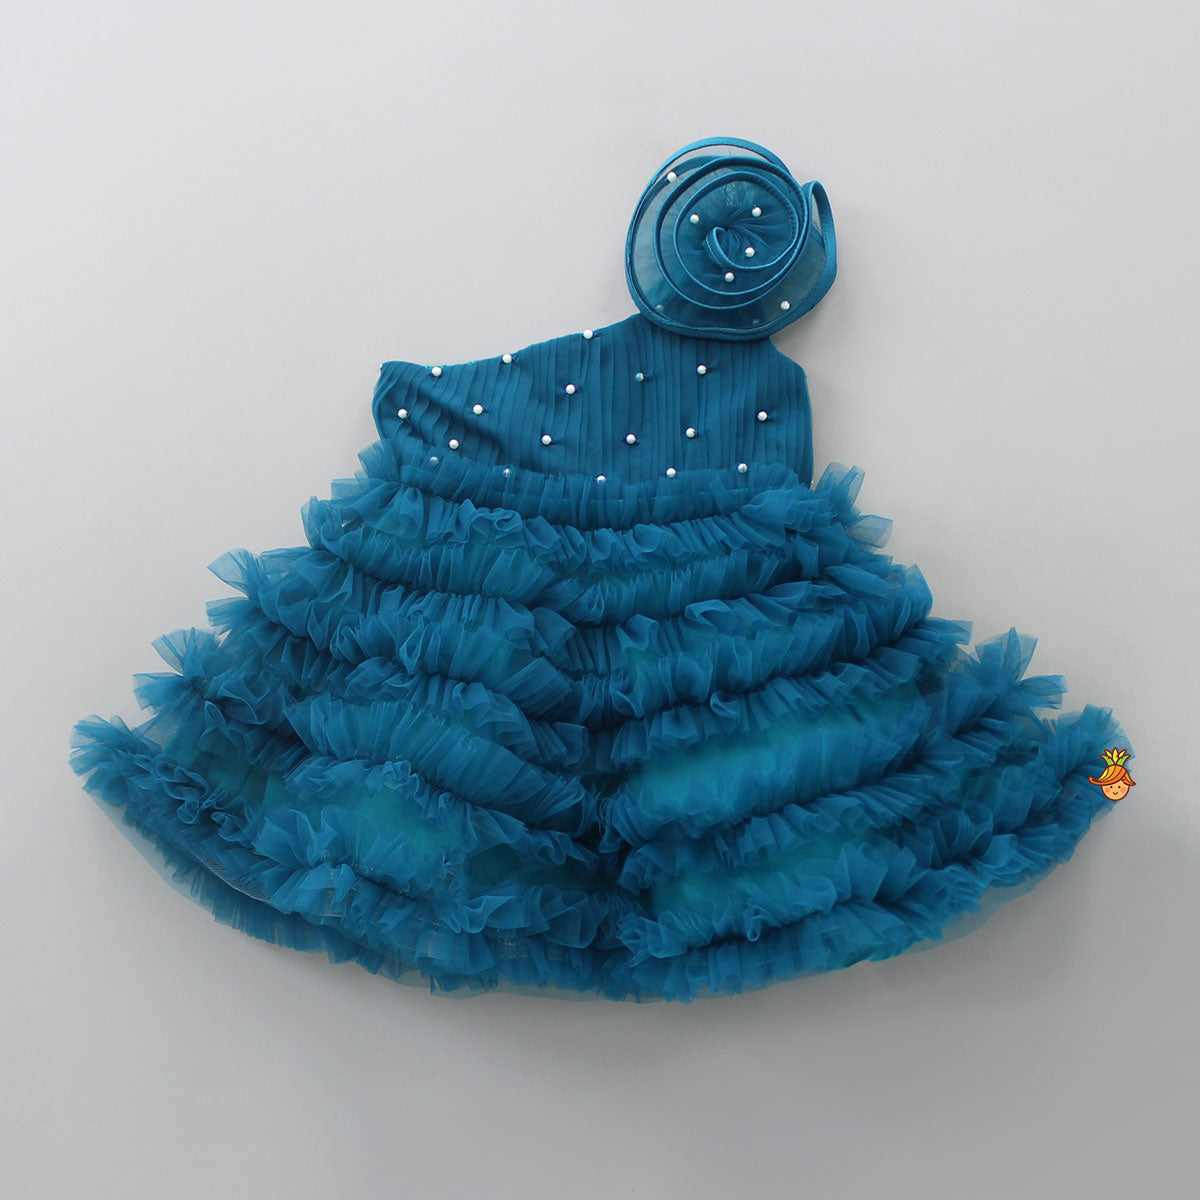 Swirl Ruffled Teal Blue One Shoulder Dress